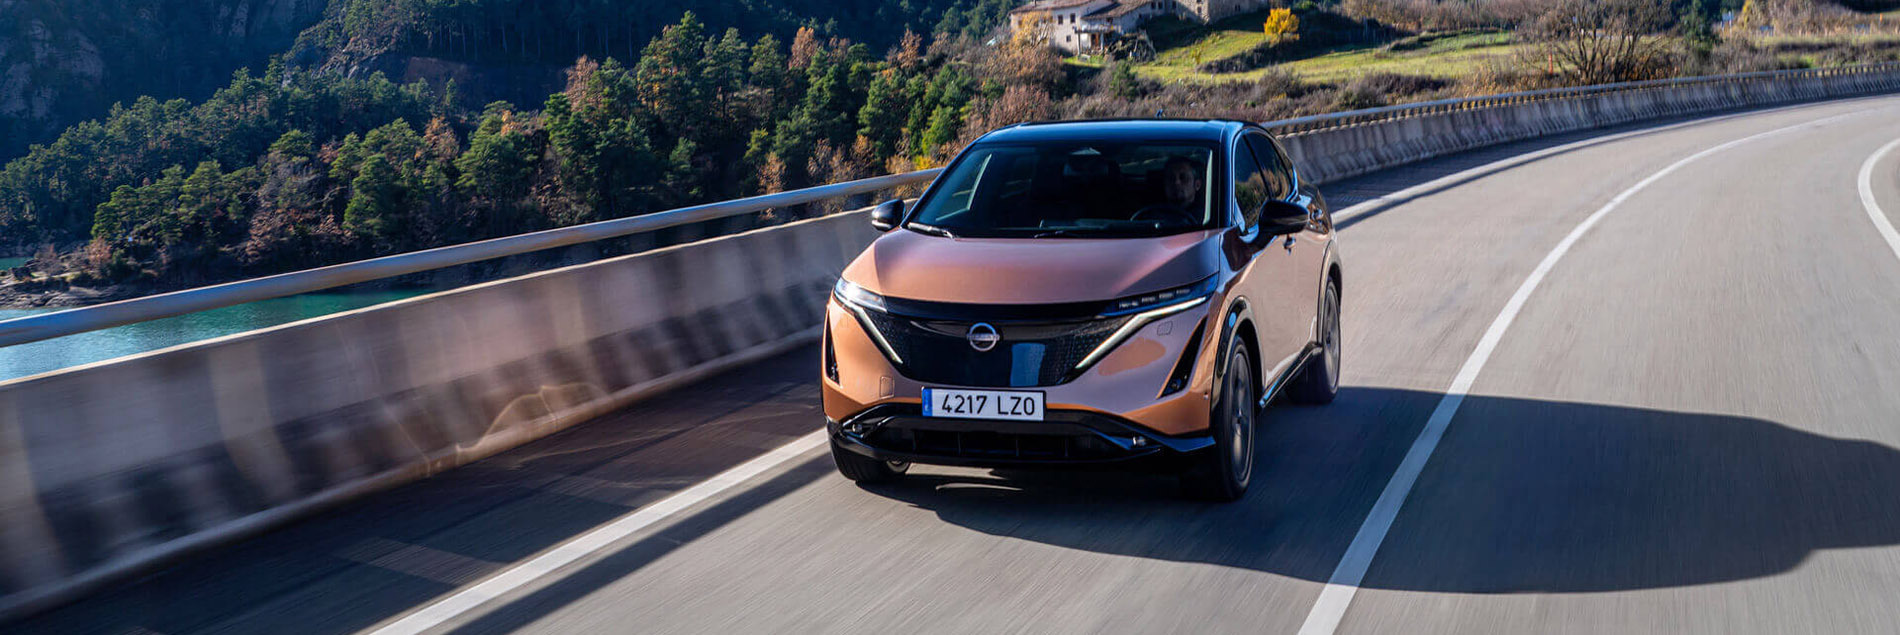 Nissan делает ставку на электрификацию с новым модельным рядом и технологиями